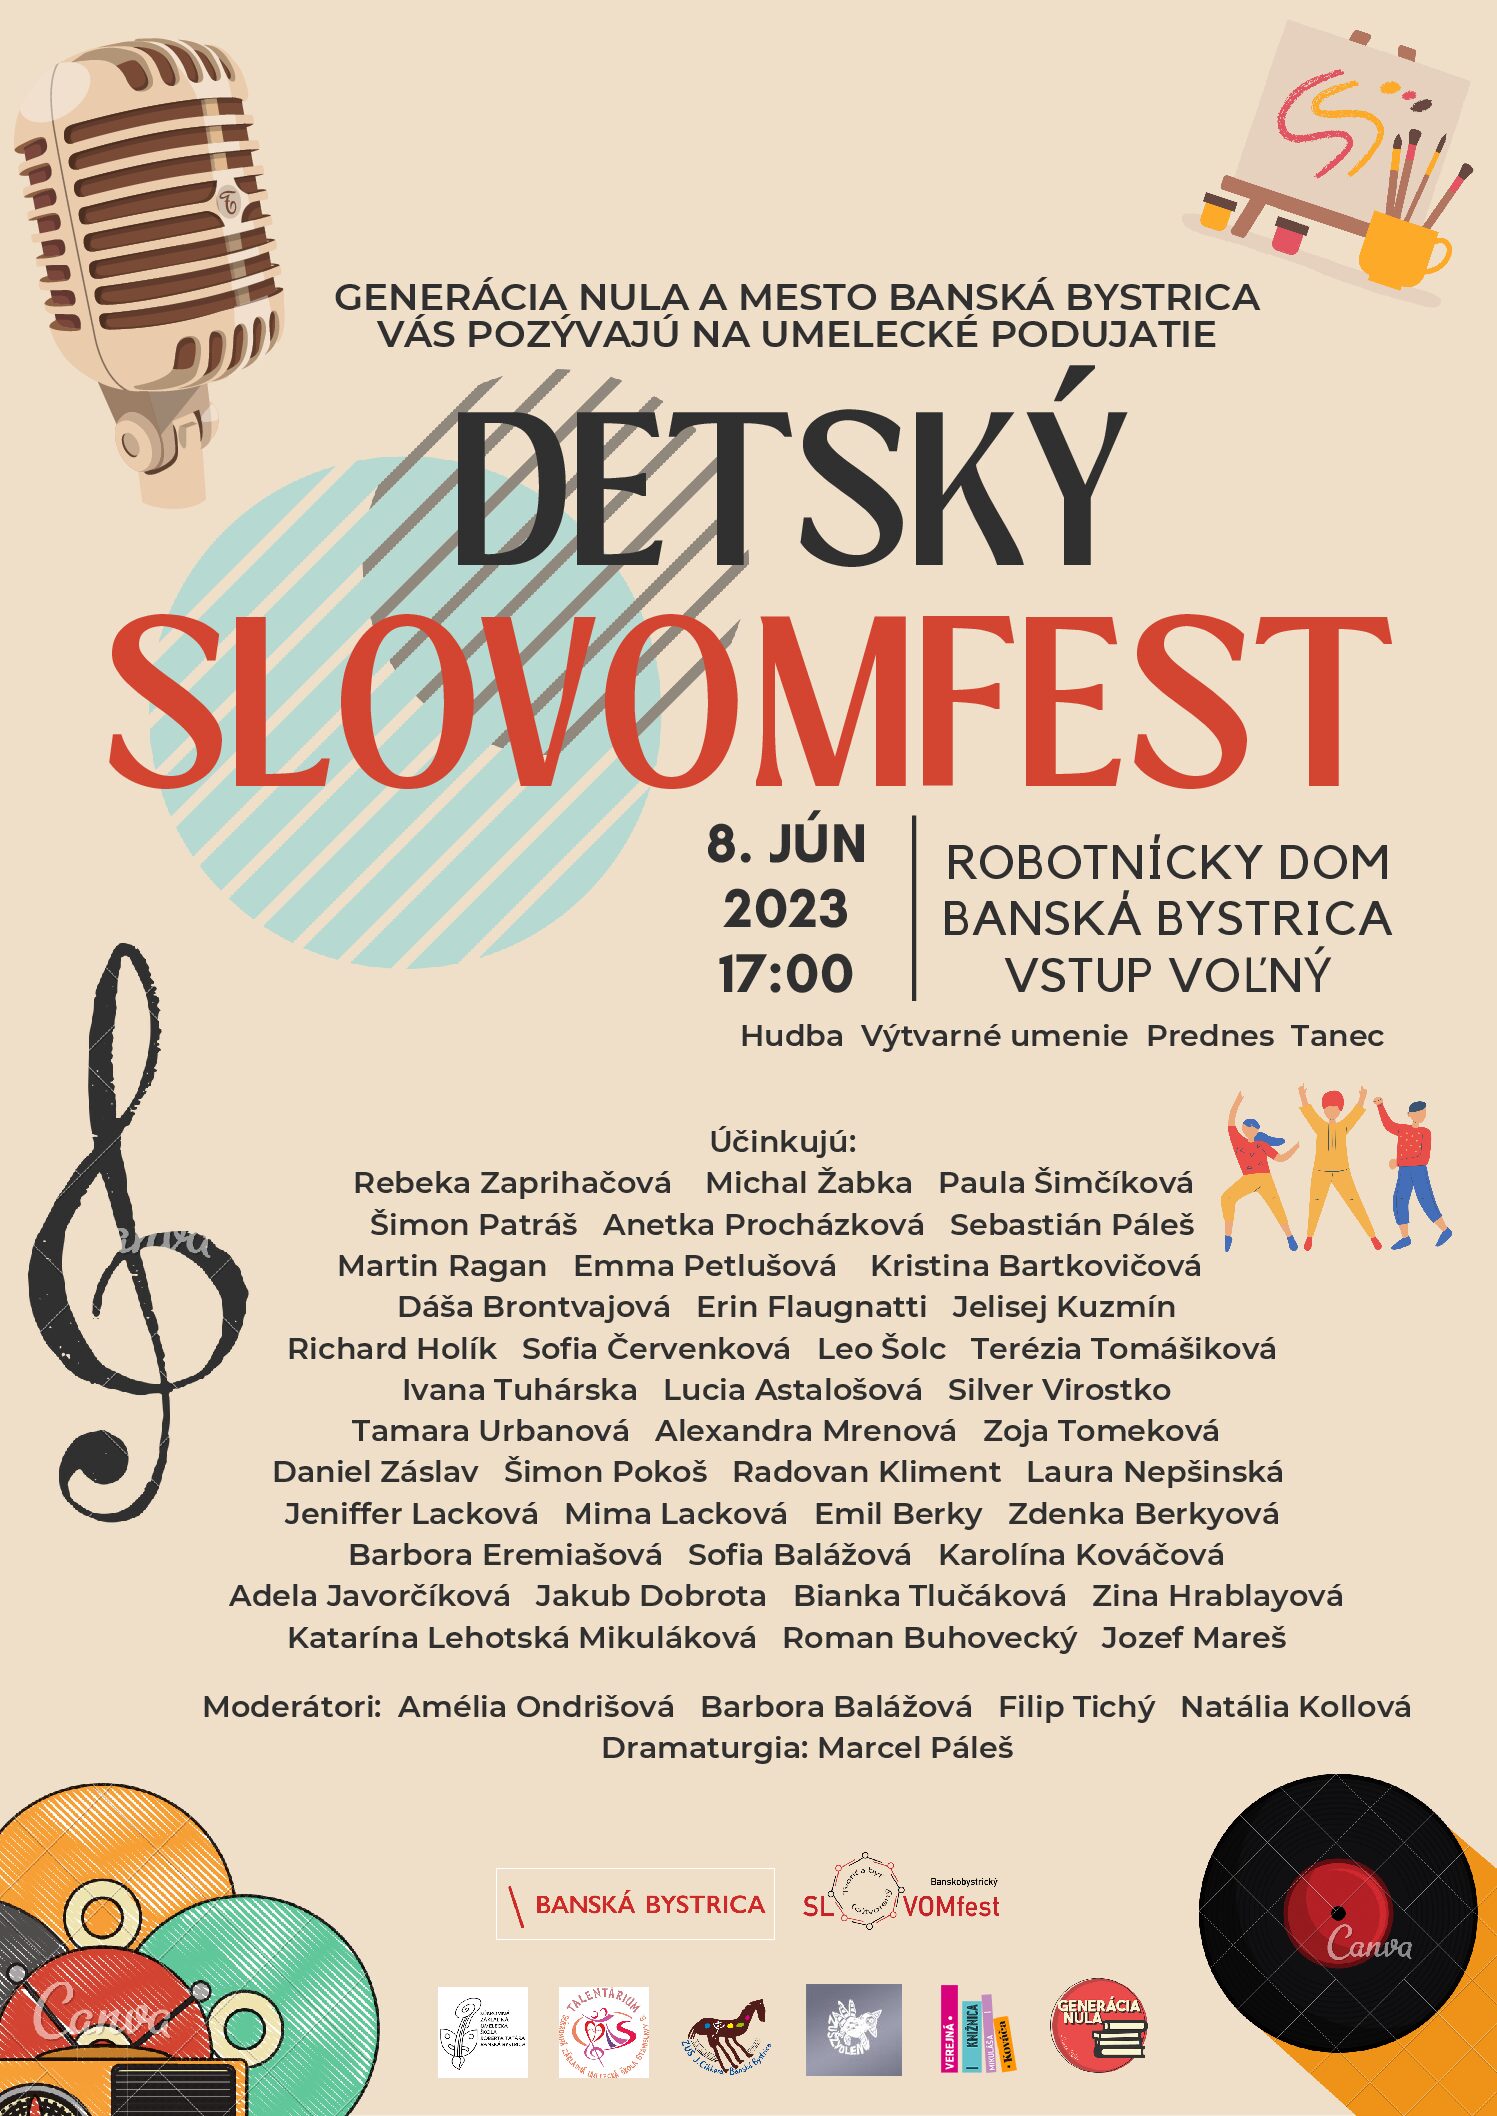 Detský SLOVOMfest 2023